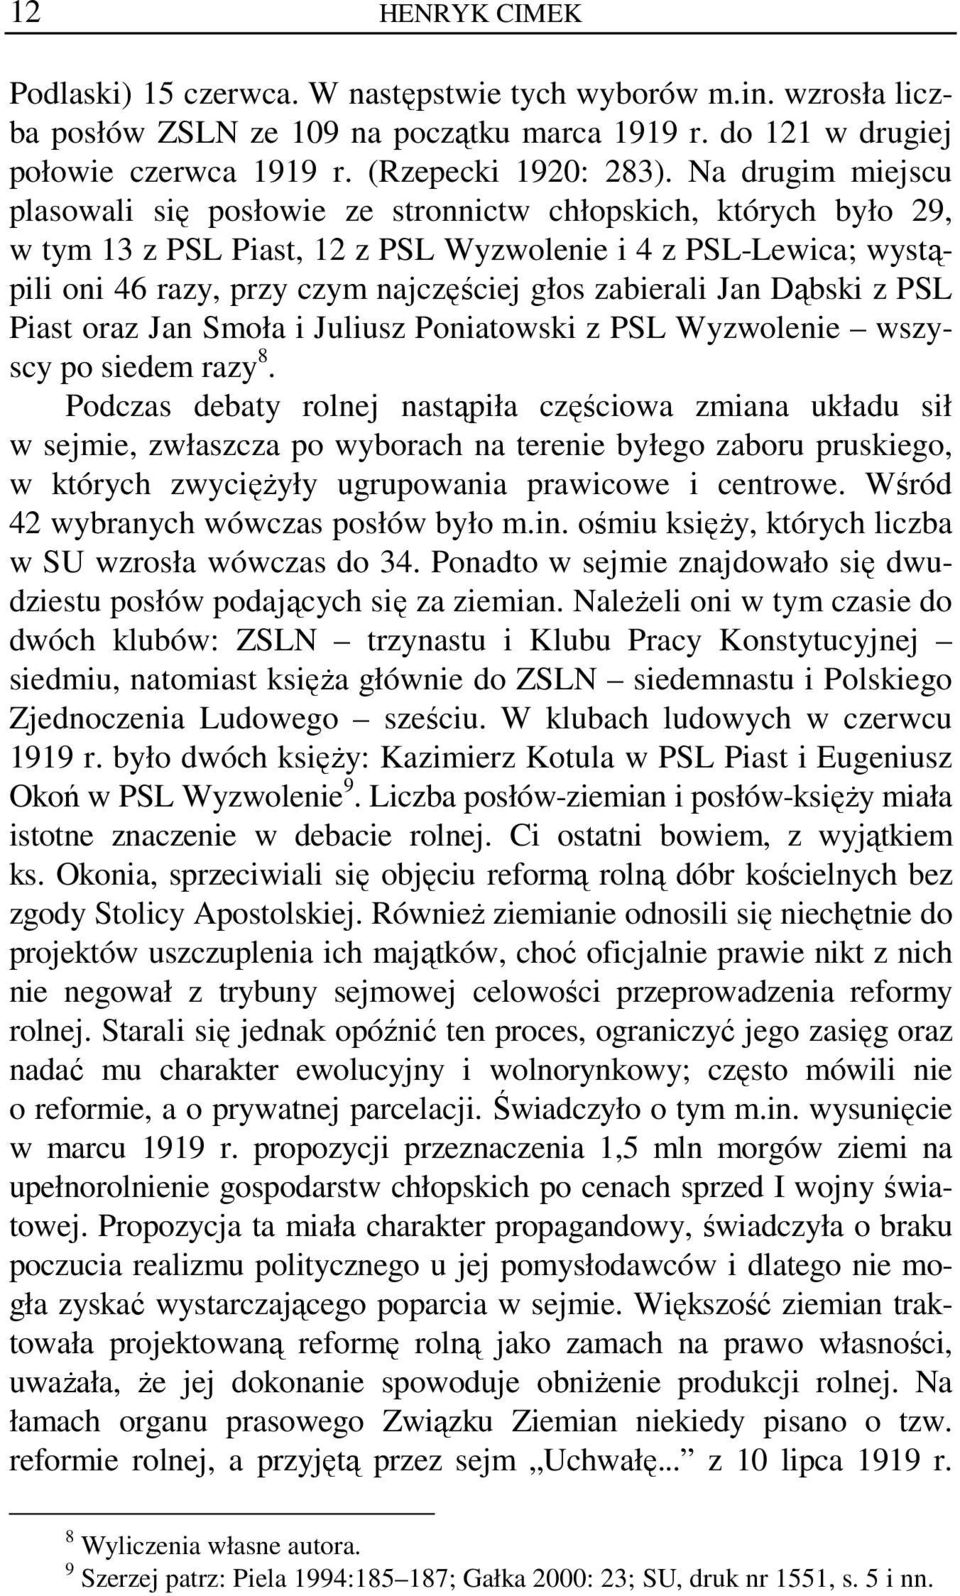 zabierali Jan Dąbski z PSL Piast oraz Jan Smoła i Juliusz Poniatowski z PSL Wyzwolenie wszyscy po siedem razy 8.